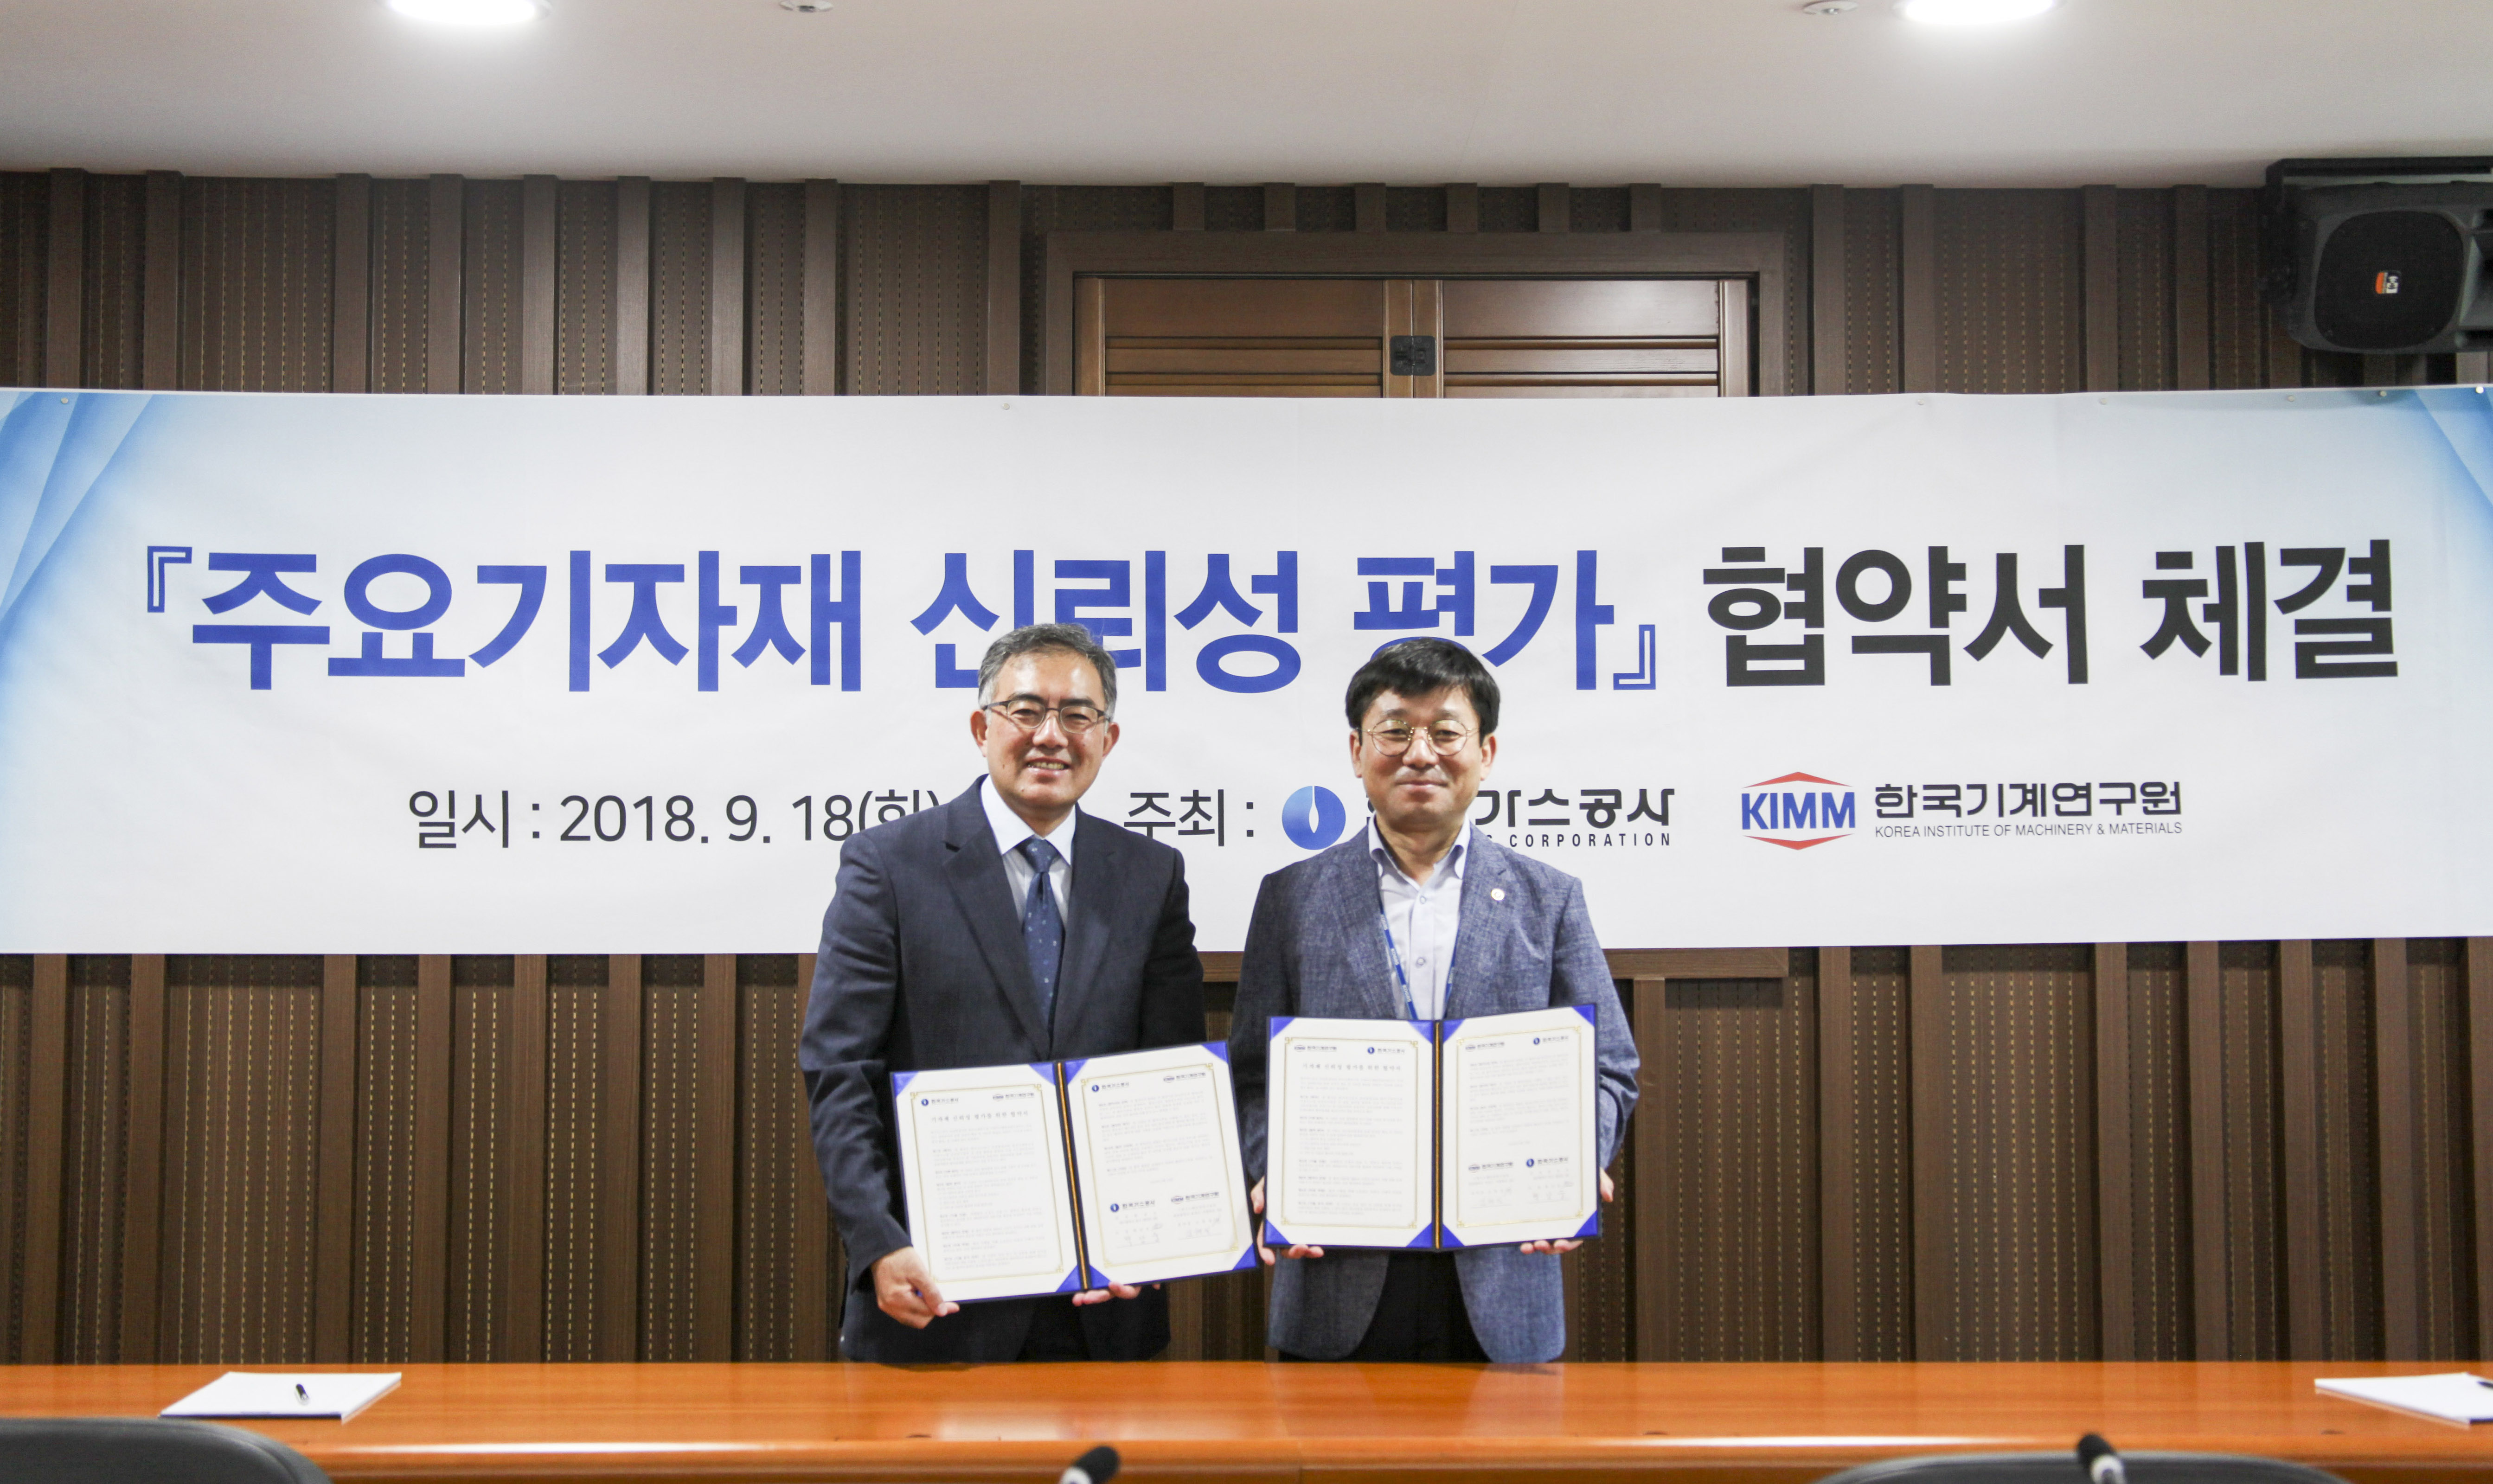 KIMM 기계시스템안전연구본부 - 한국가스공사 안전품질처 MOU (2018.09.18.)